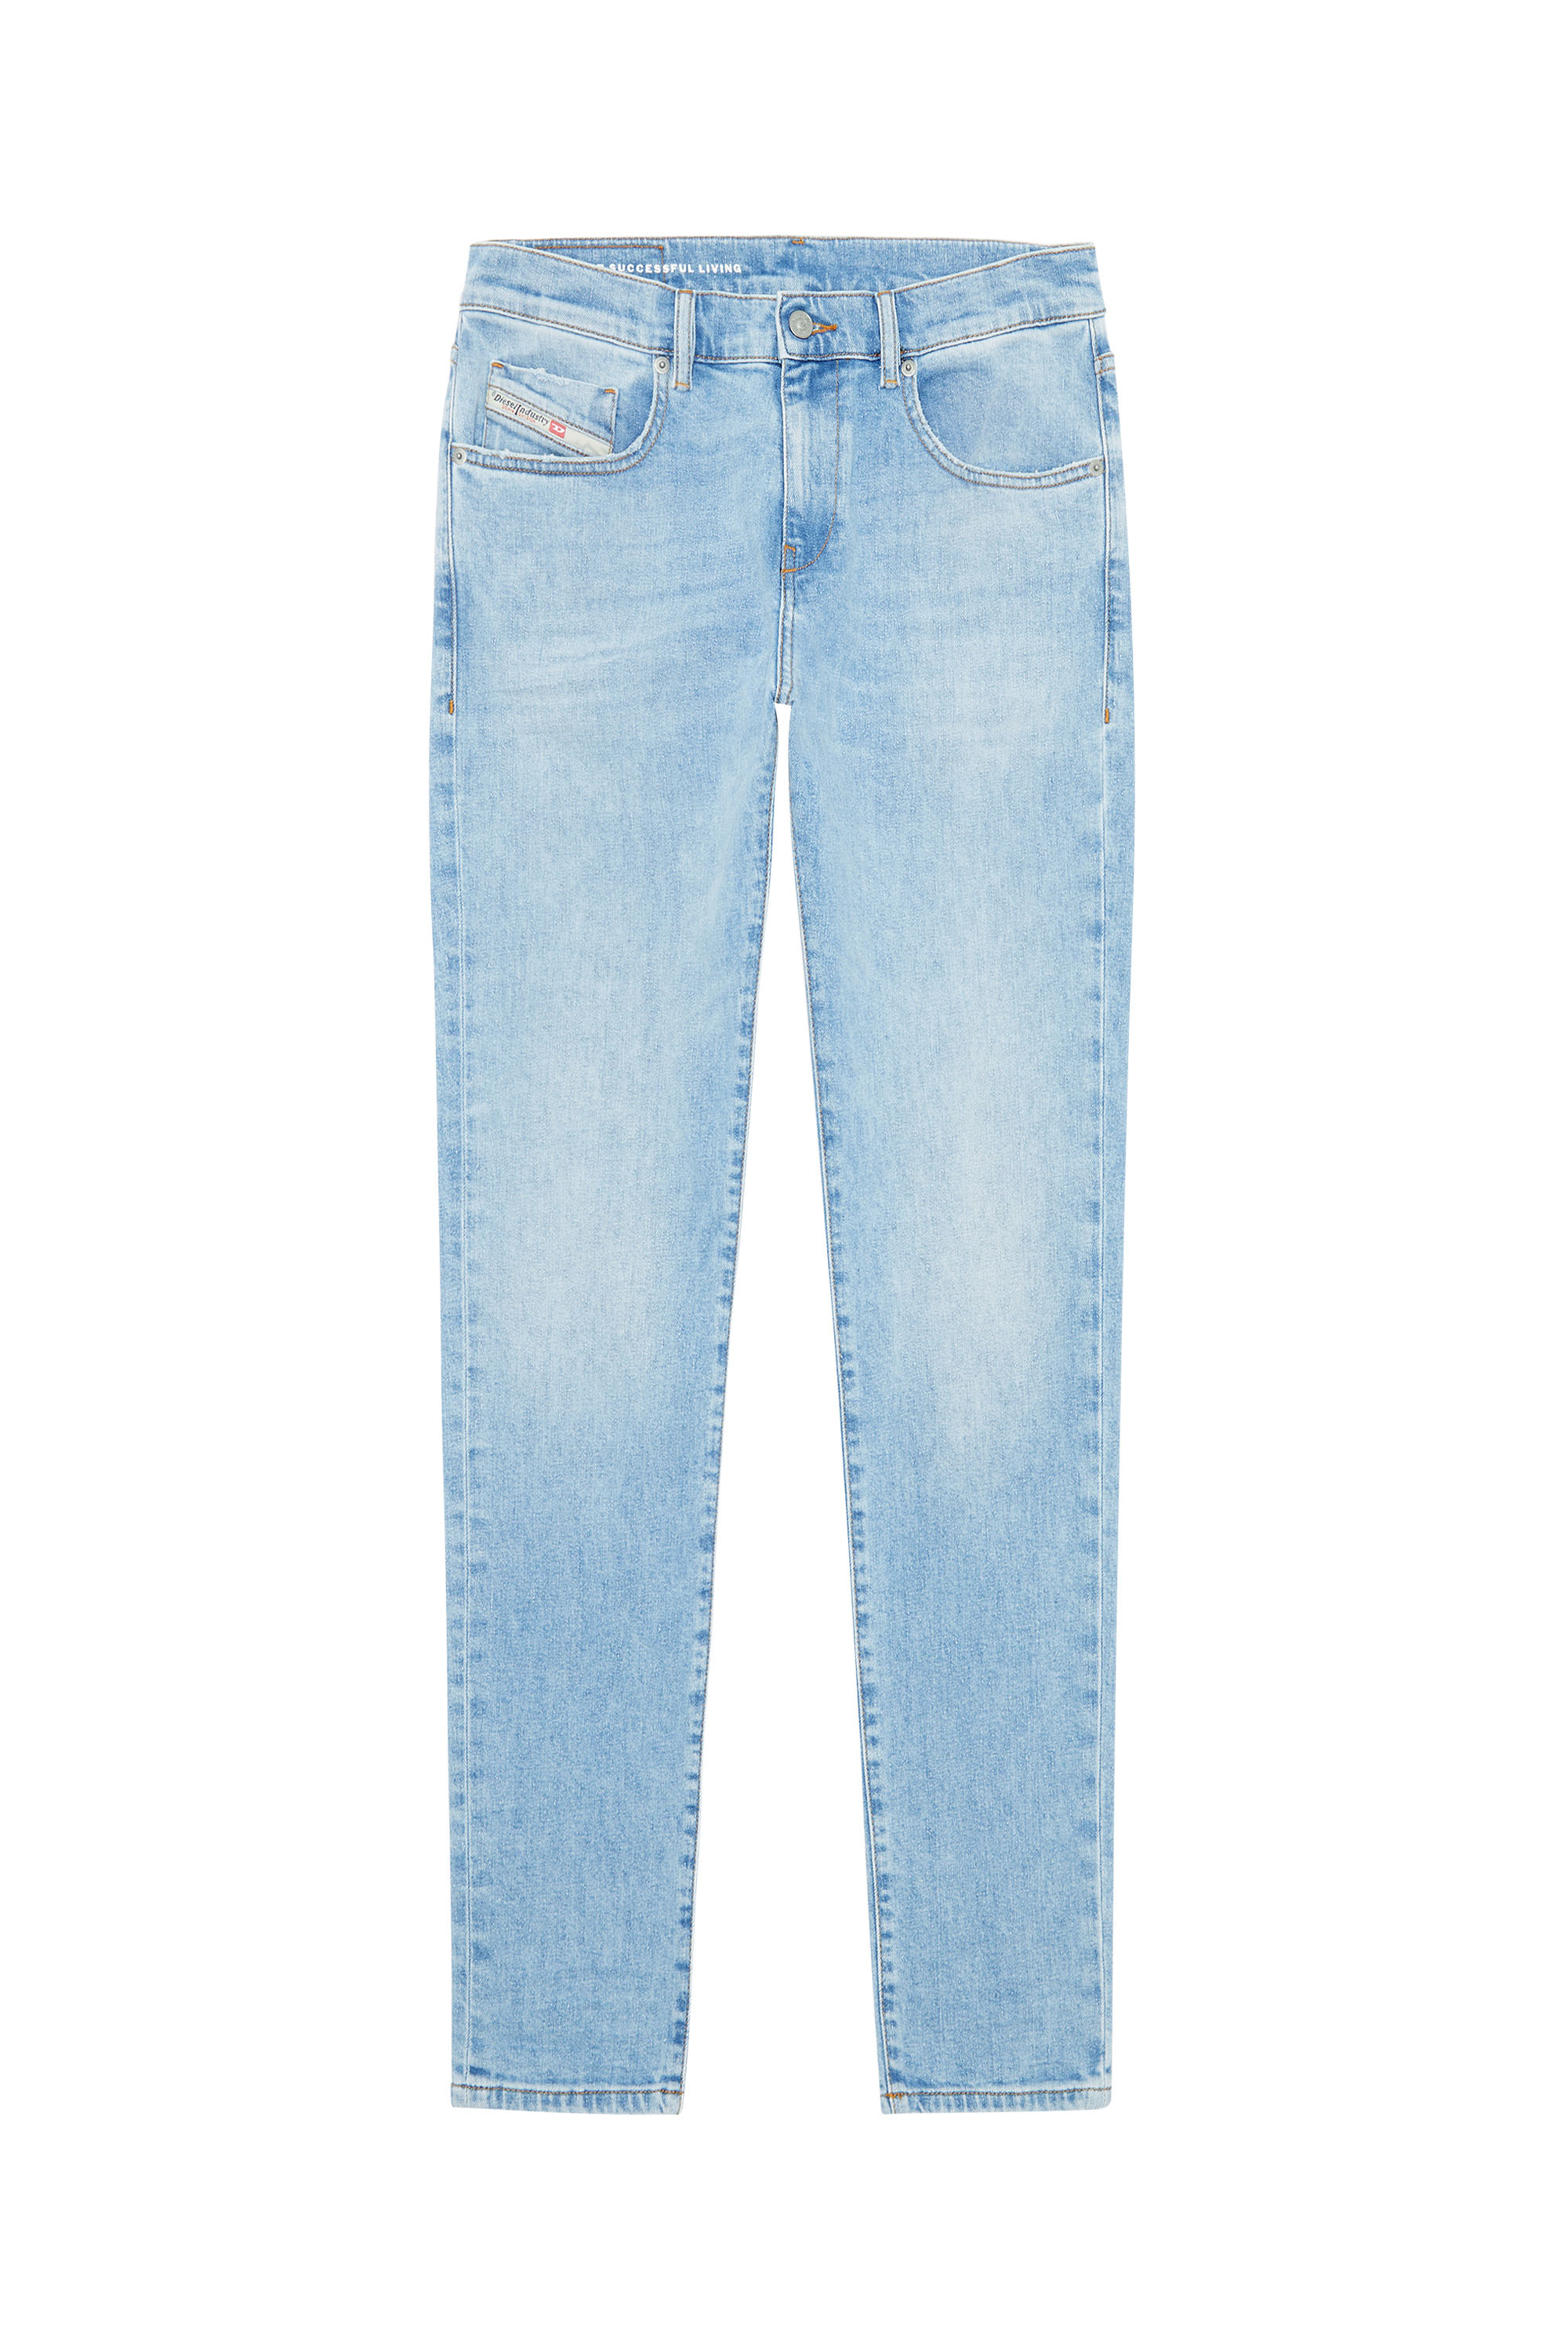 Diesel - Slim Jeans 2019 D-Strukt 09F41,  - Image 5